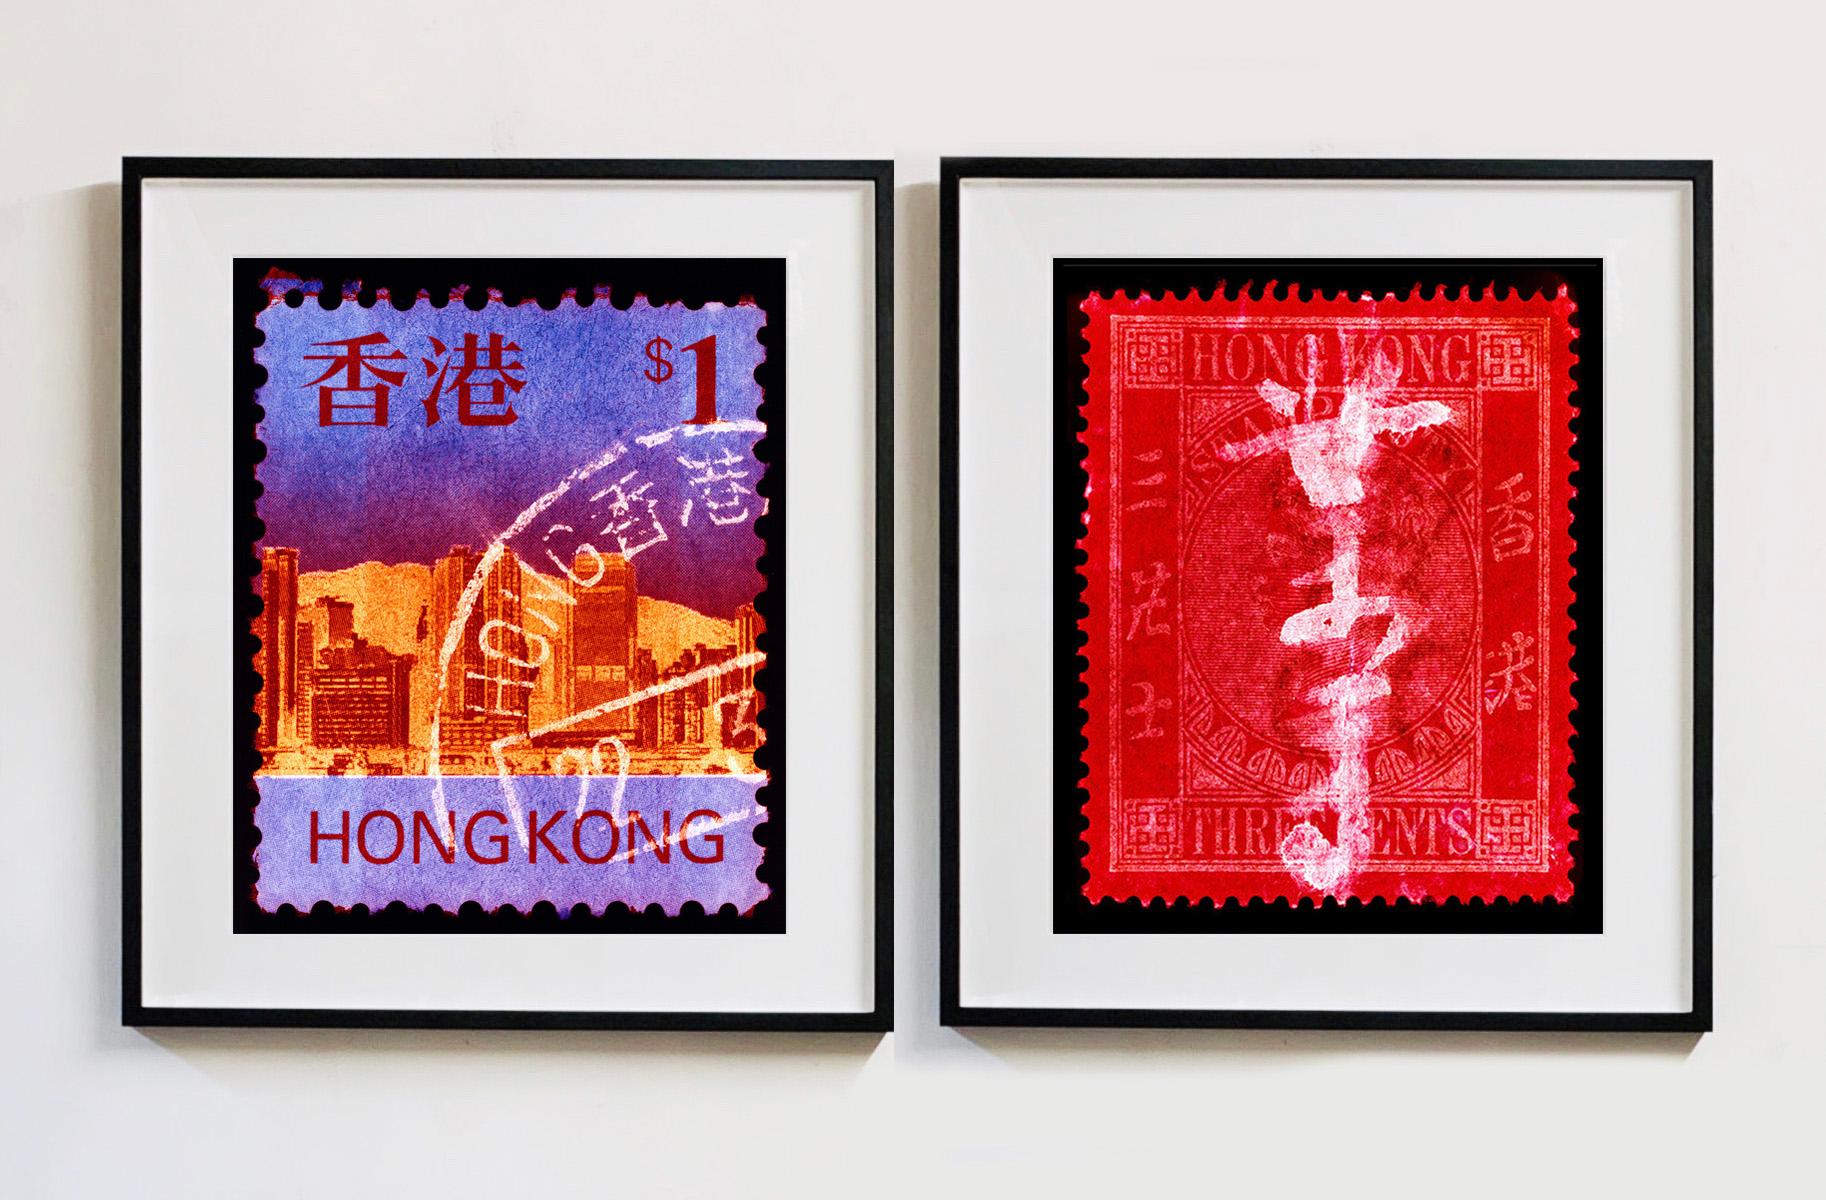 QV 3 Cents, aus der Heidler & Heeps Briefmarkensammlung, Serie Hongkong. Der feine, detaillierte Wandteppich der originalen Hongkong-Kleinbriefmarke wurde durch den Frankiervermerk und Heidler & Heeps spezielles Dunkelkammerverfahren zum Leben